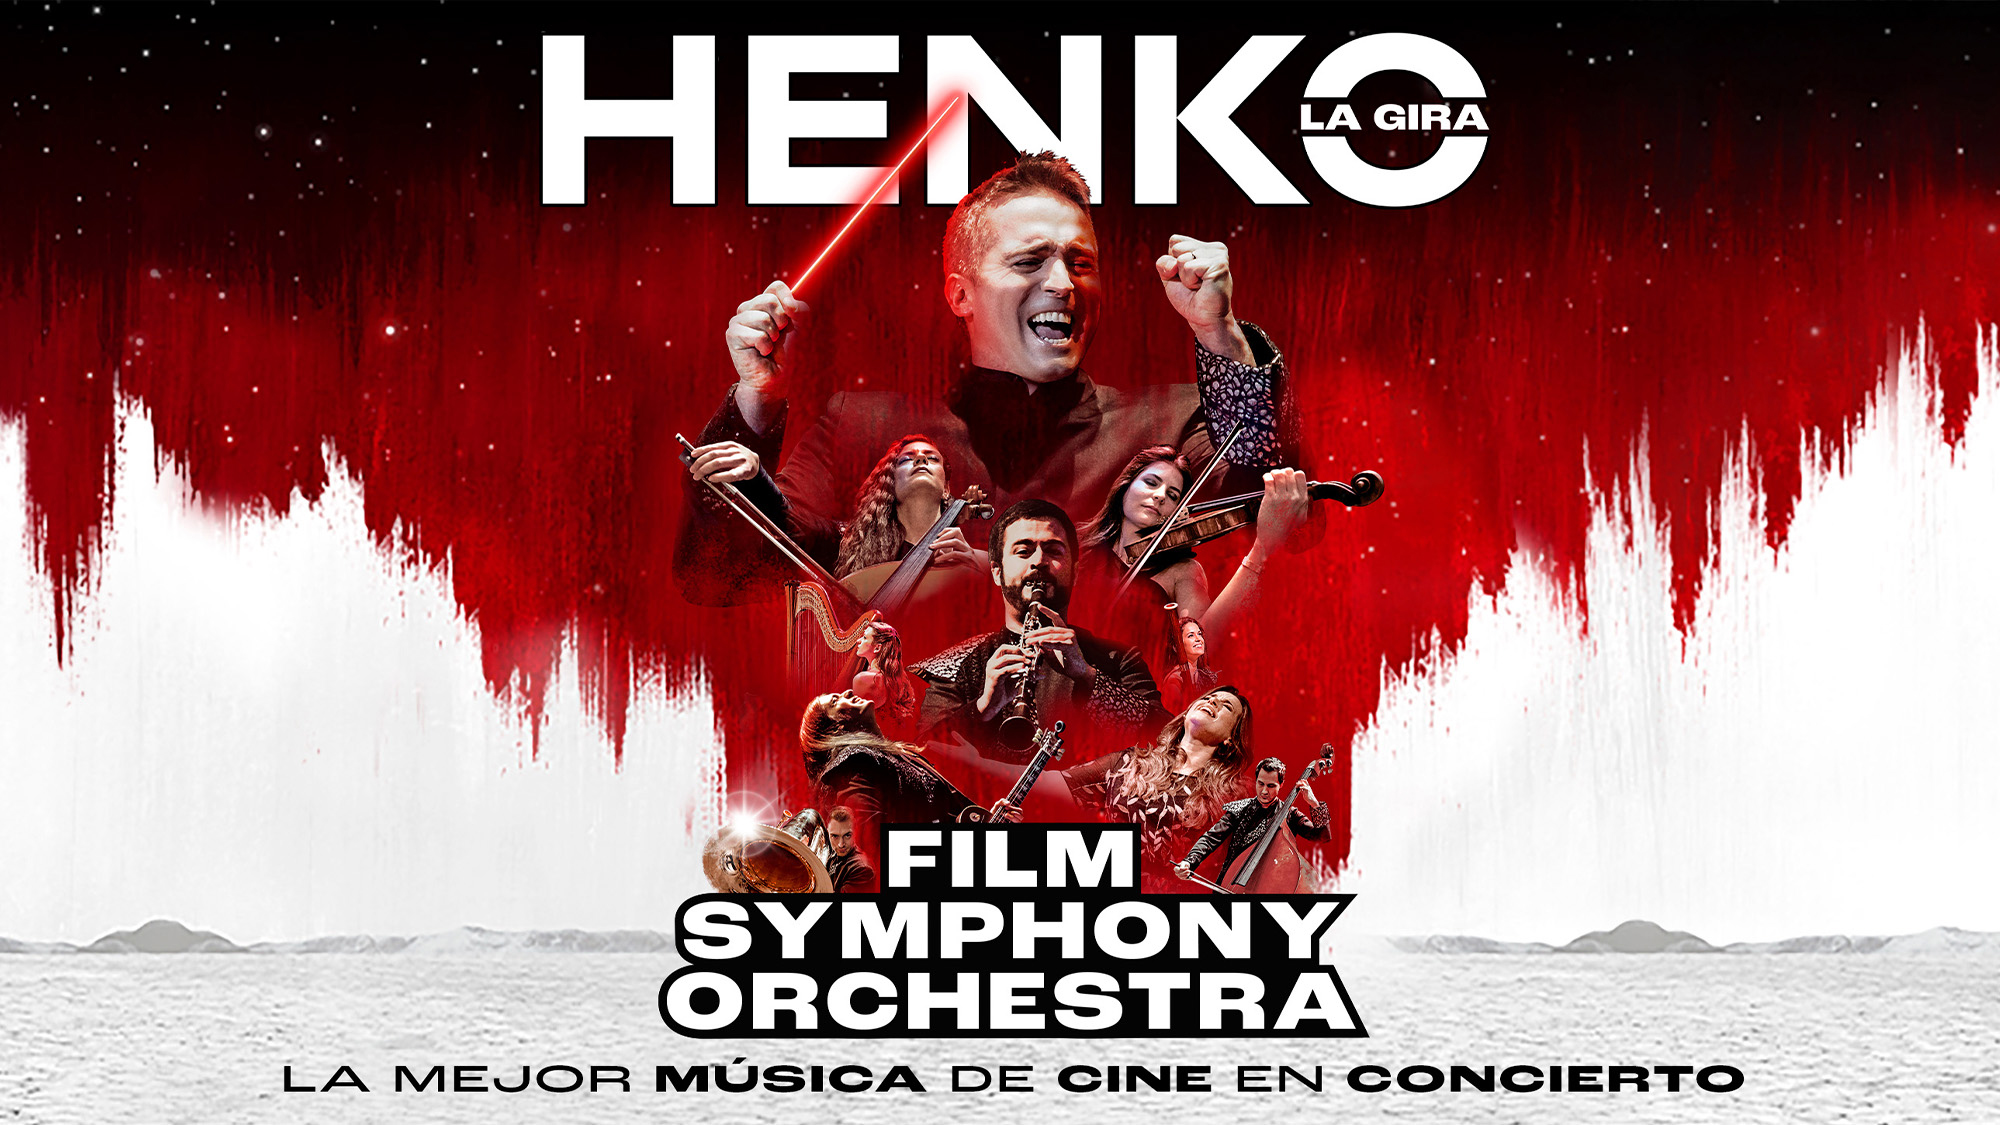 Film Symphony Orchestra. Henko La Gira. La mejor música de cine en concierto